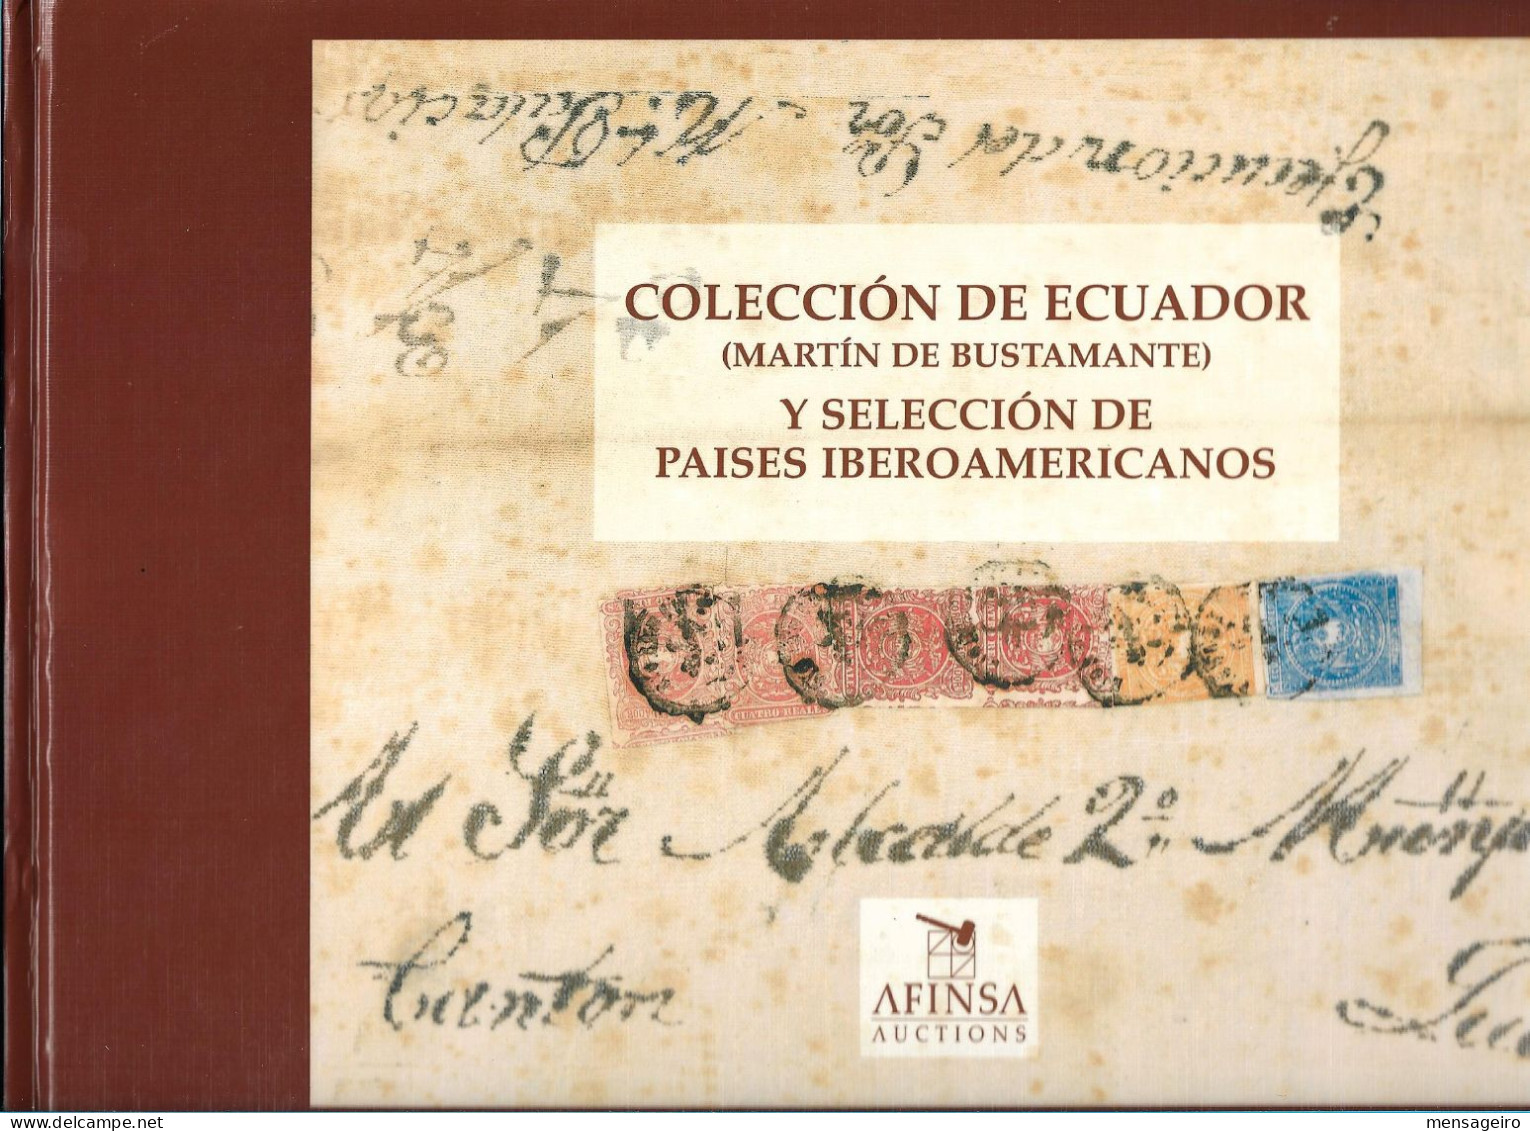 (LIV) - COLECCION DE ECUADOR MARTIN DE BUSTAMENTE Y SELECCION DE PAISES IBEROAMERICANOS AFINSA AUCTIONS CATALOG 1996 - Filatelia E Historia De Correos